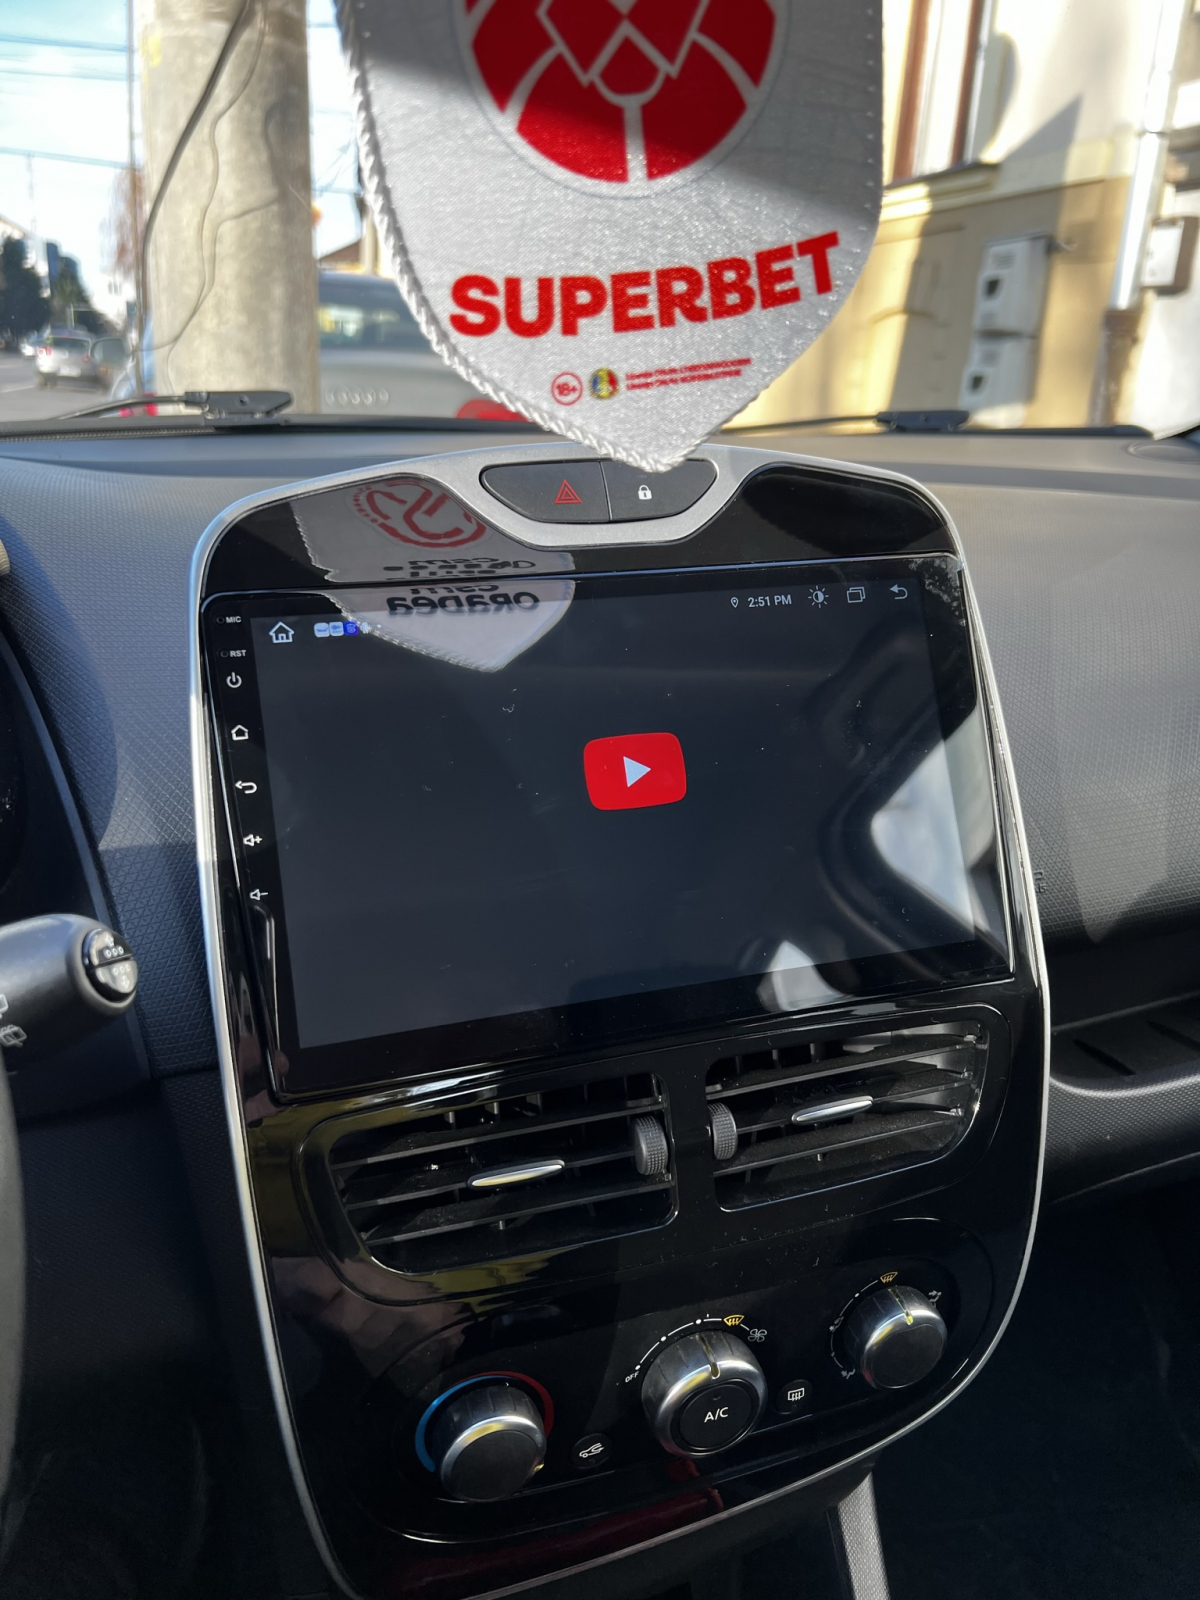 Autoradio Android Carplay pour Clio 4 (2012-2020)